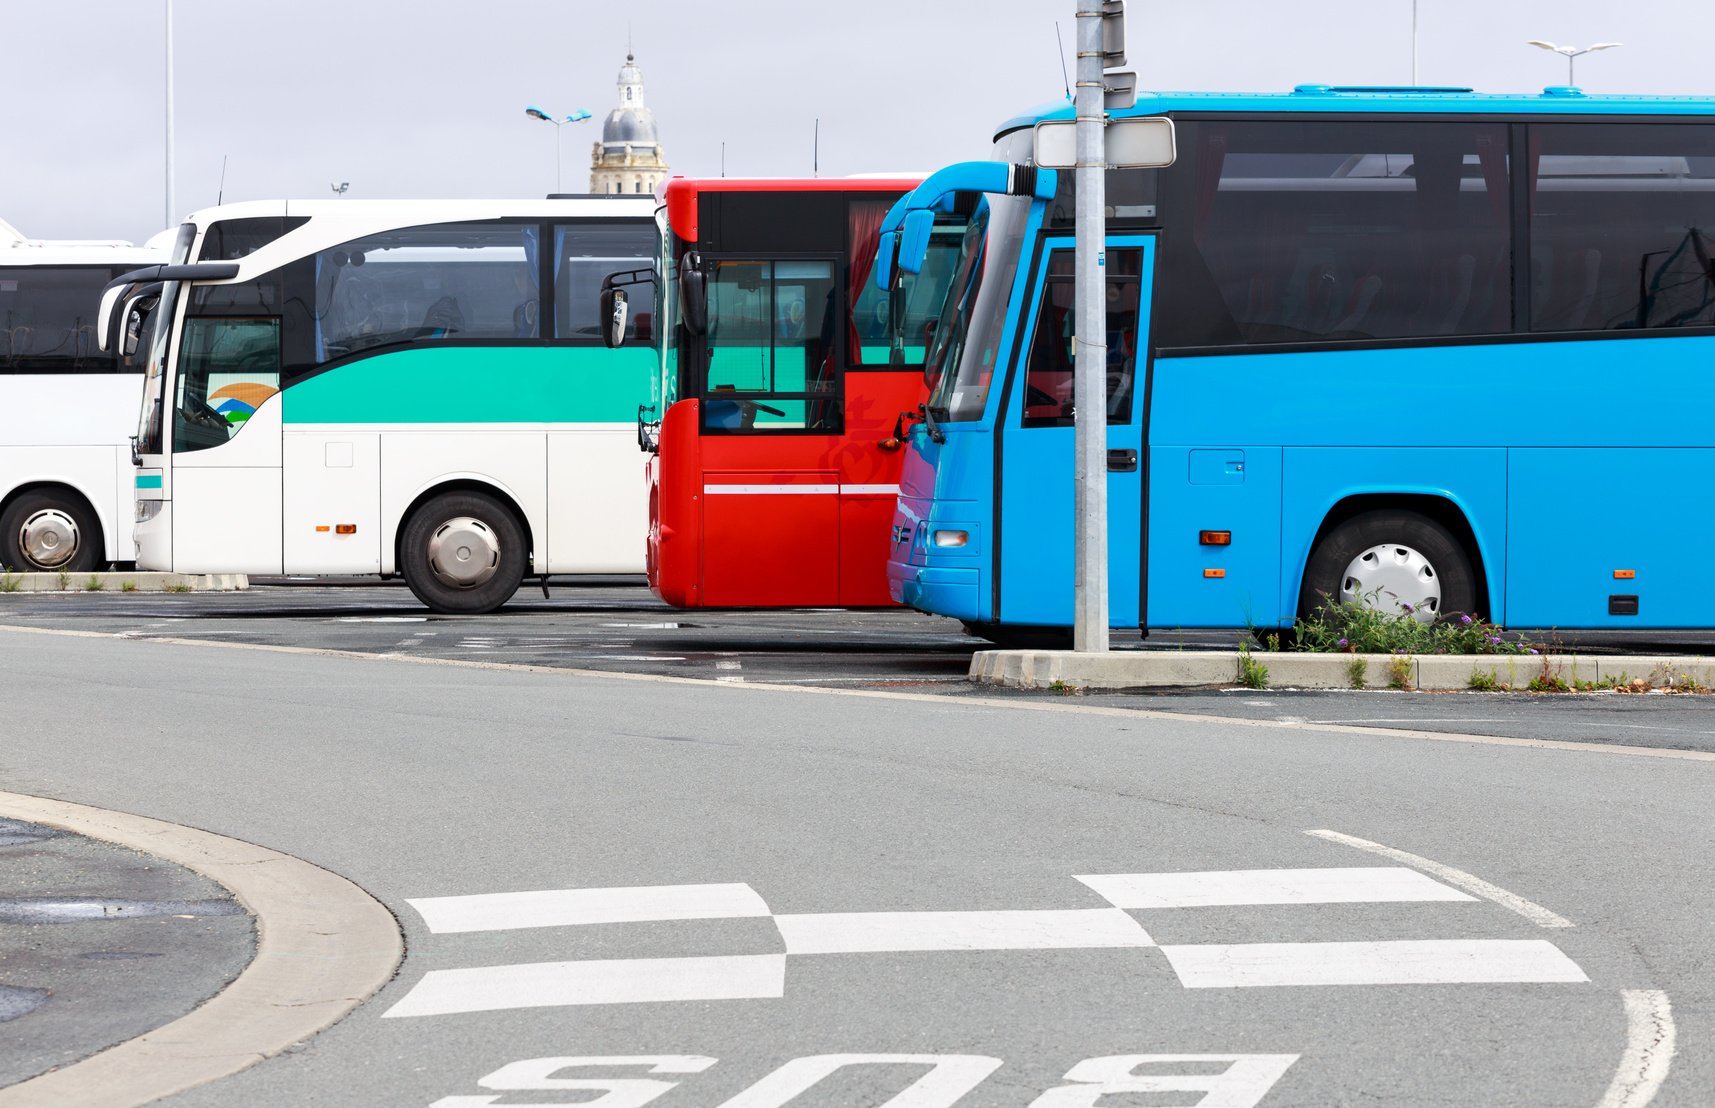 Οργανισμός Μεσολάβησης και Διαιτησίας: Σ.Σ.Ε. (25.5.2021) για τους όρους αμοιβής και εργασίας των Οδηγών Τουριστικών Λεωφορείων Κρήτης